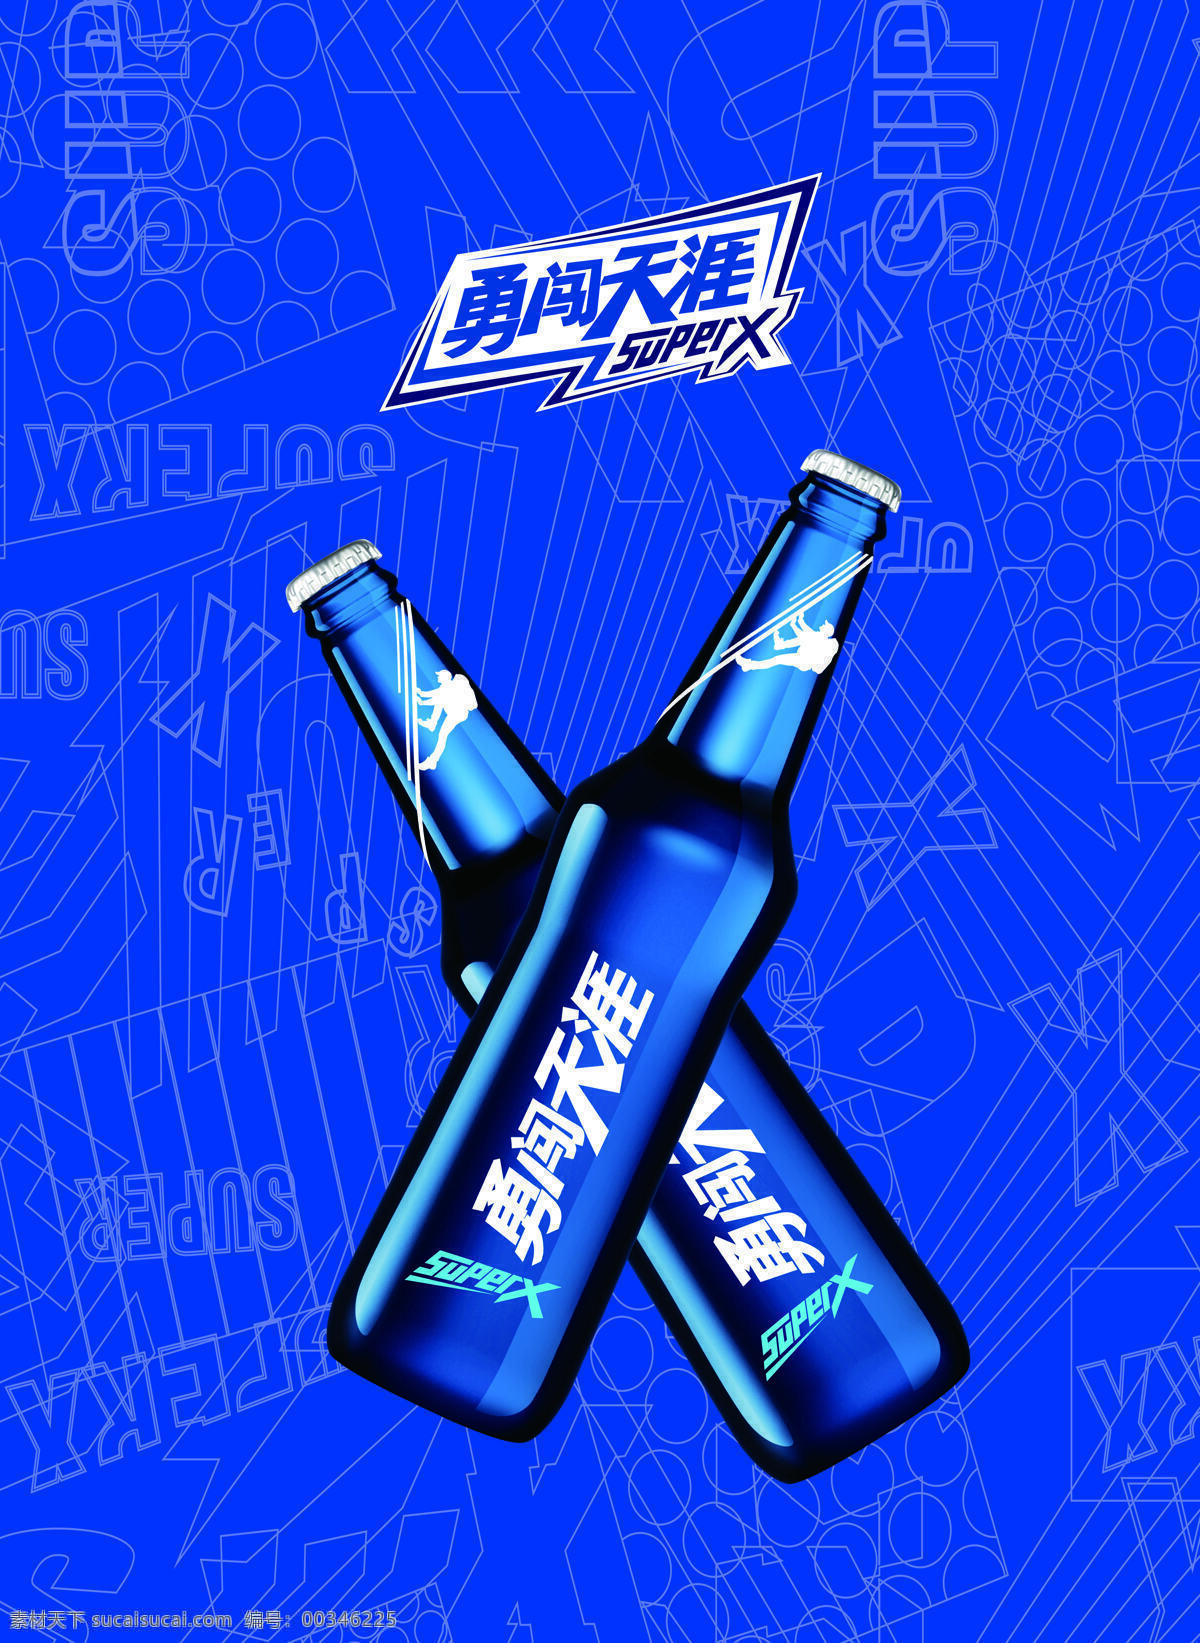 雪花啤酒图片 啤酒标签 啤酒杯 啤酒泡沫 雪花 包装 标志图标 企业 logo 标志